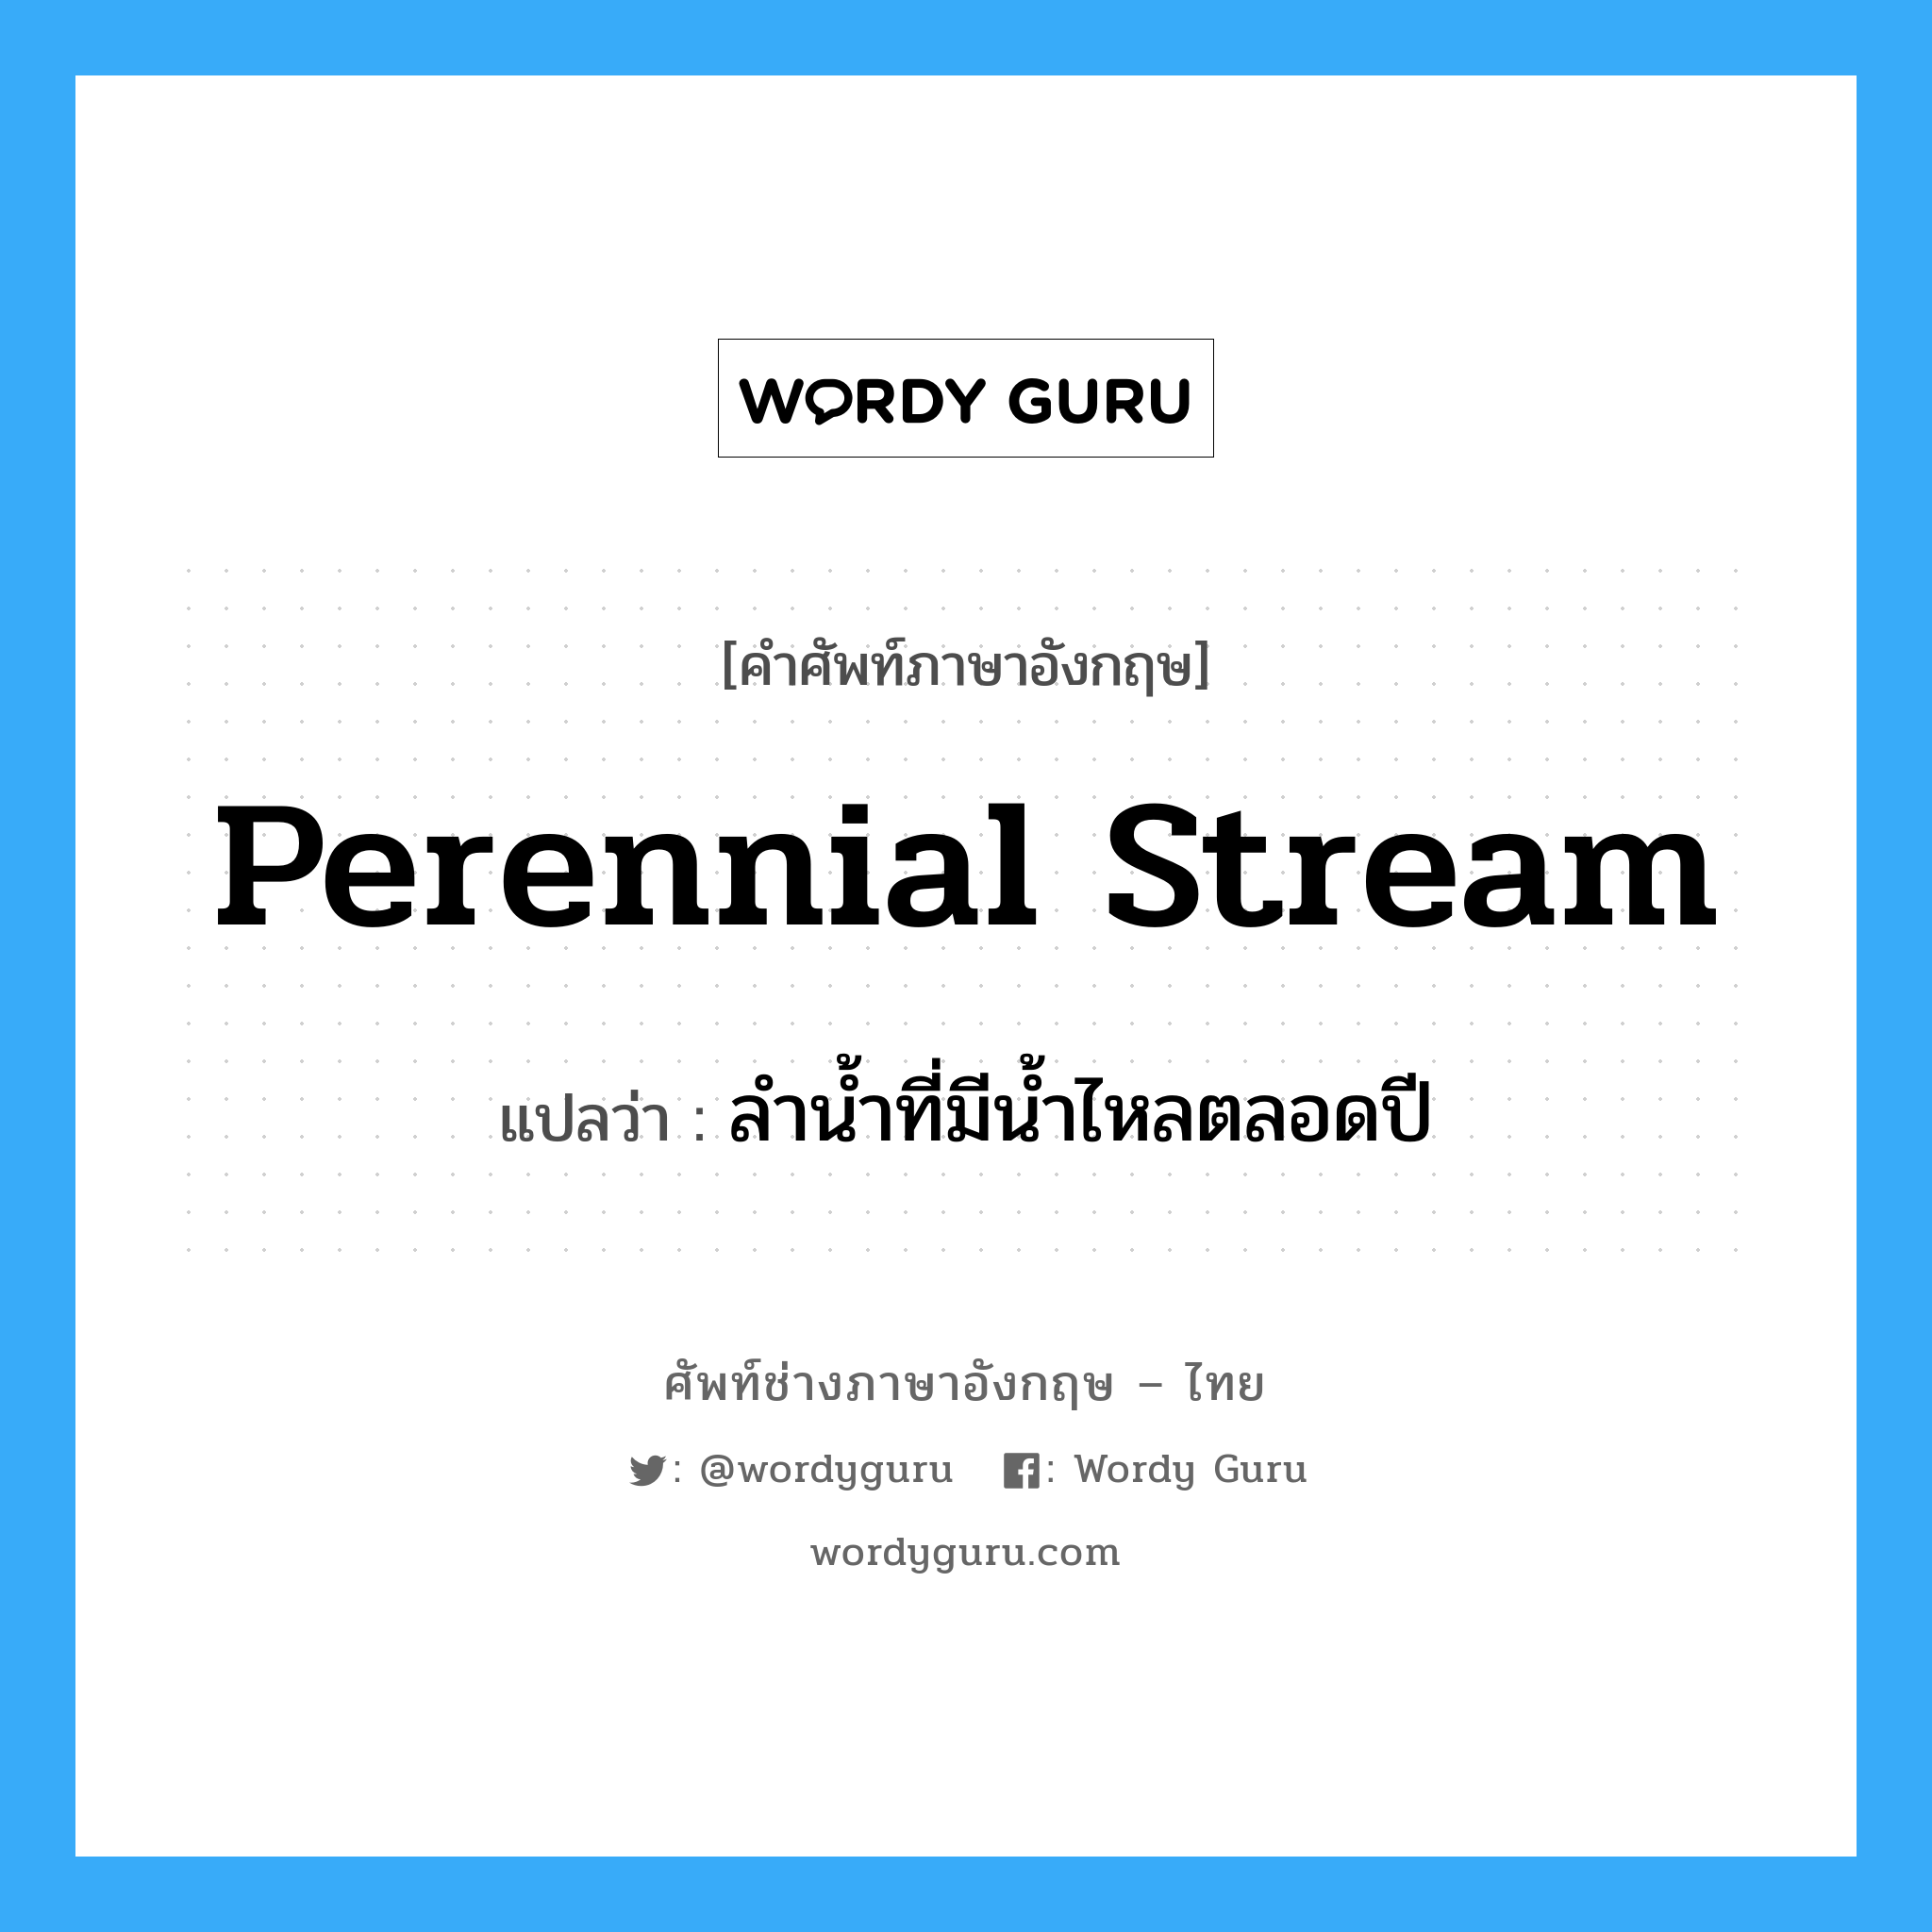 perennial stream แปลว่า?, คำศัพท์ช่างภาษาอังกฤษ - ไทย perennial stream คำศัพท์ภาษาอังกฤษ perennial stream แปลว่า ลำน้ำที่มีน้ำไหลตลอดปี